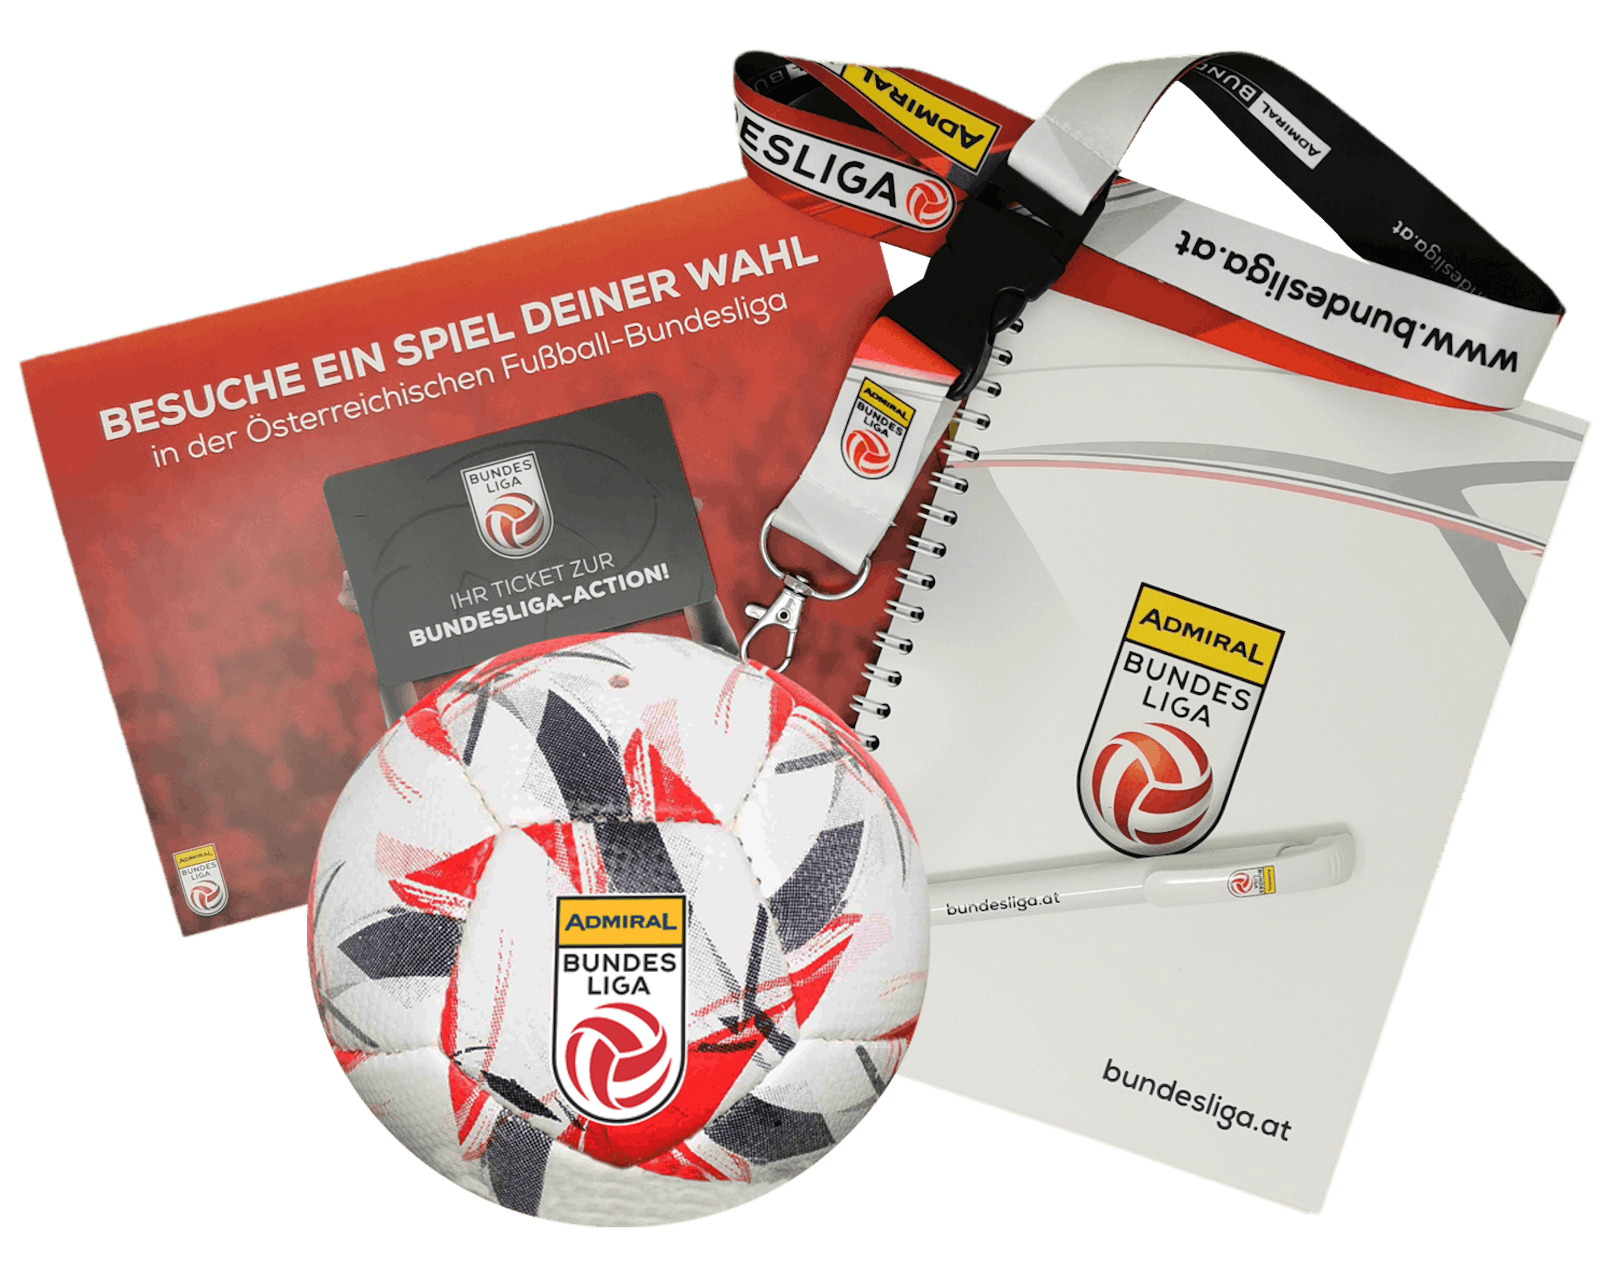  Goodie Bag der Österreichischen Fußball-Bundesliga